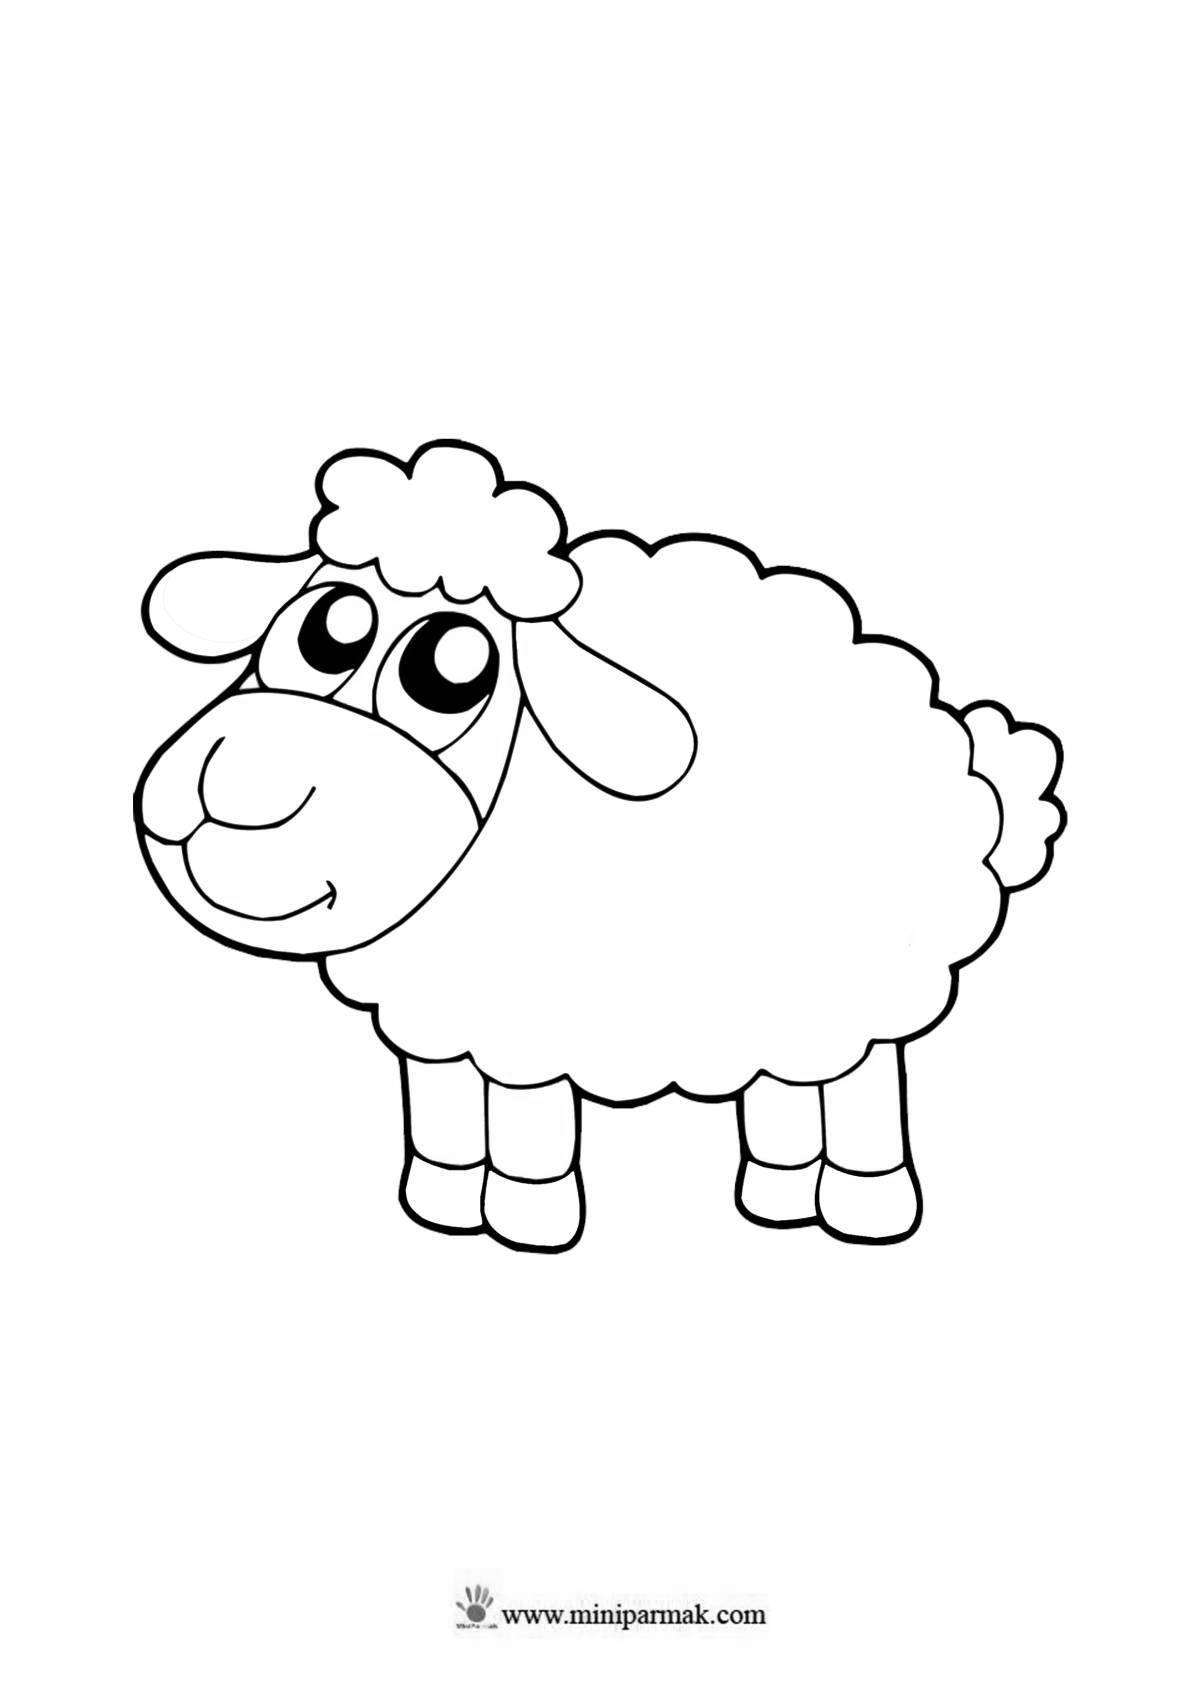 Раскраска радостная овечка для детей 4-5 лет